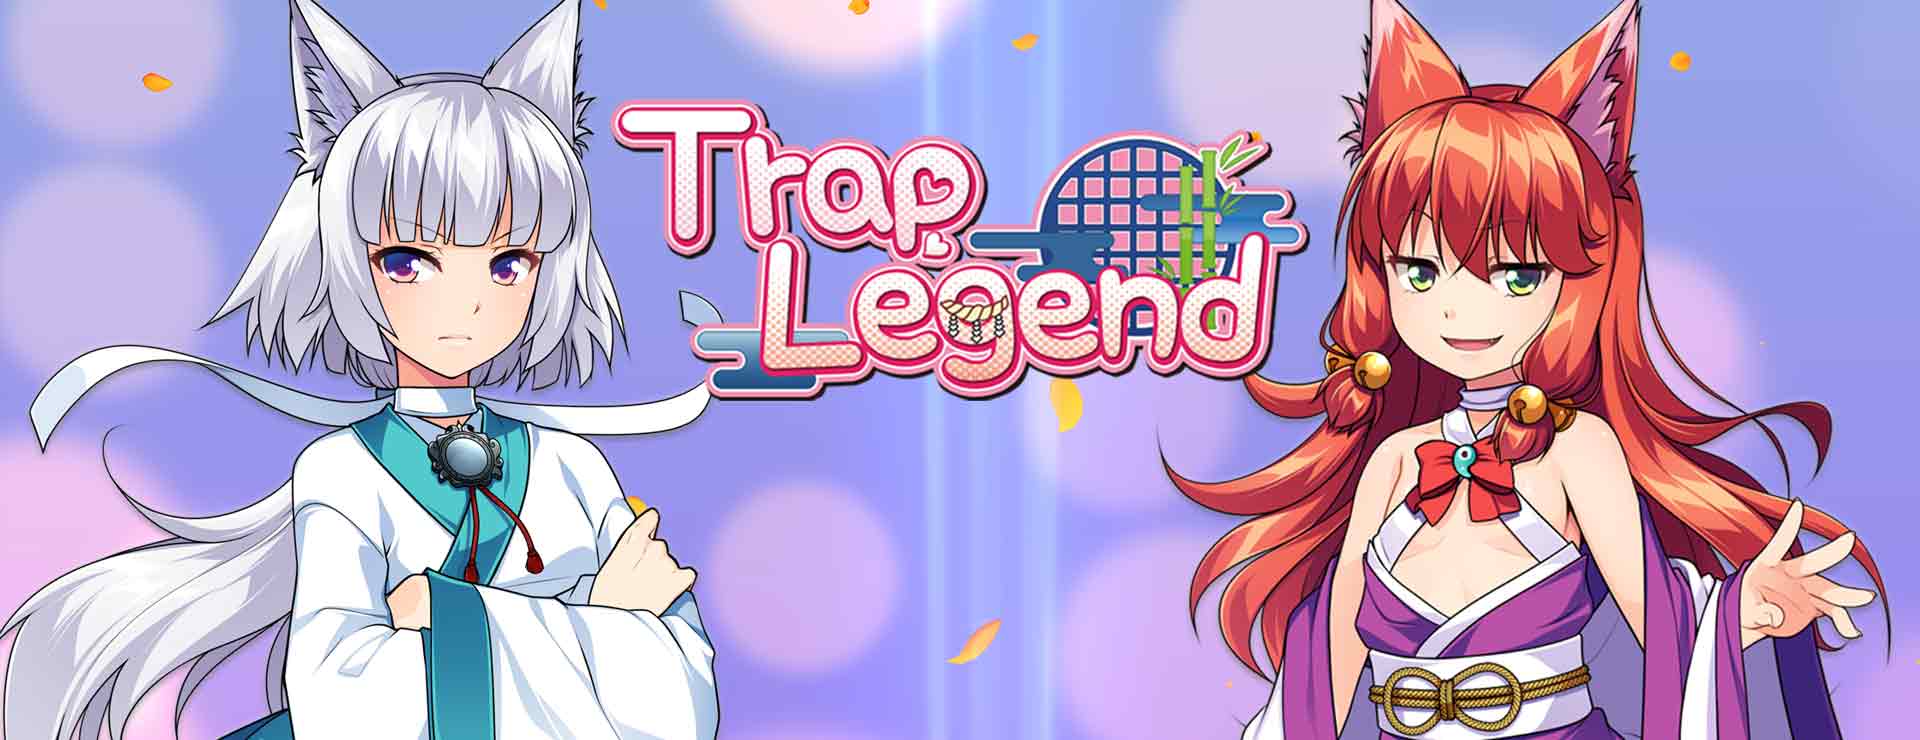 Trap Legend - ビジュアルノベル ゲーム